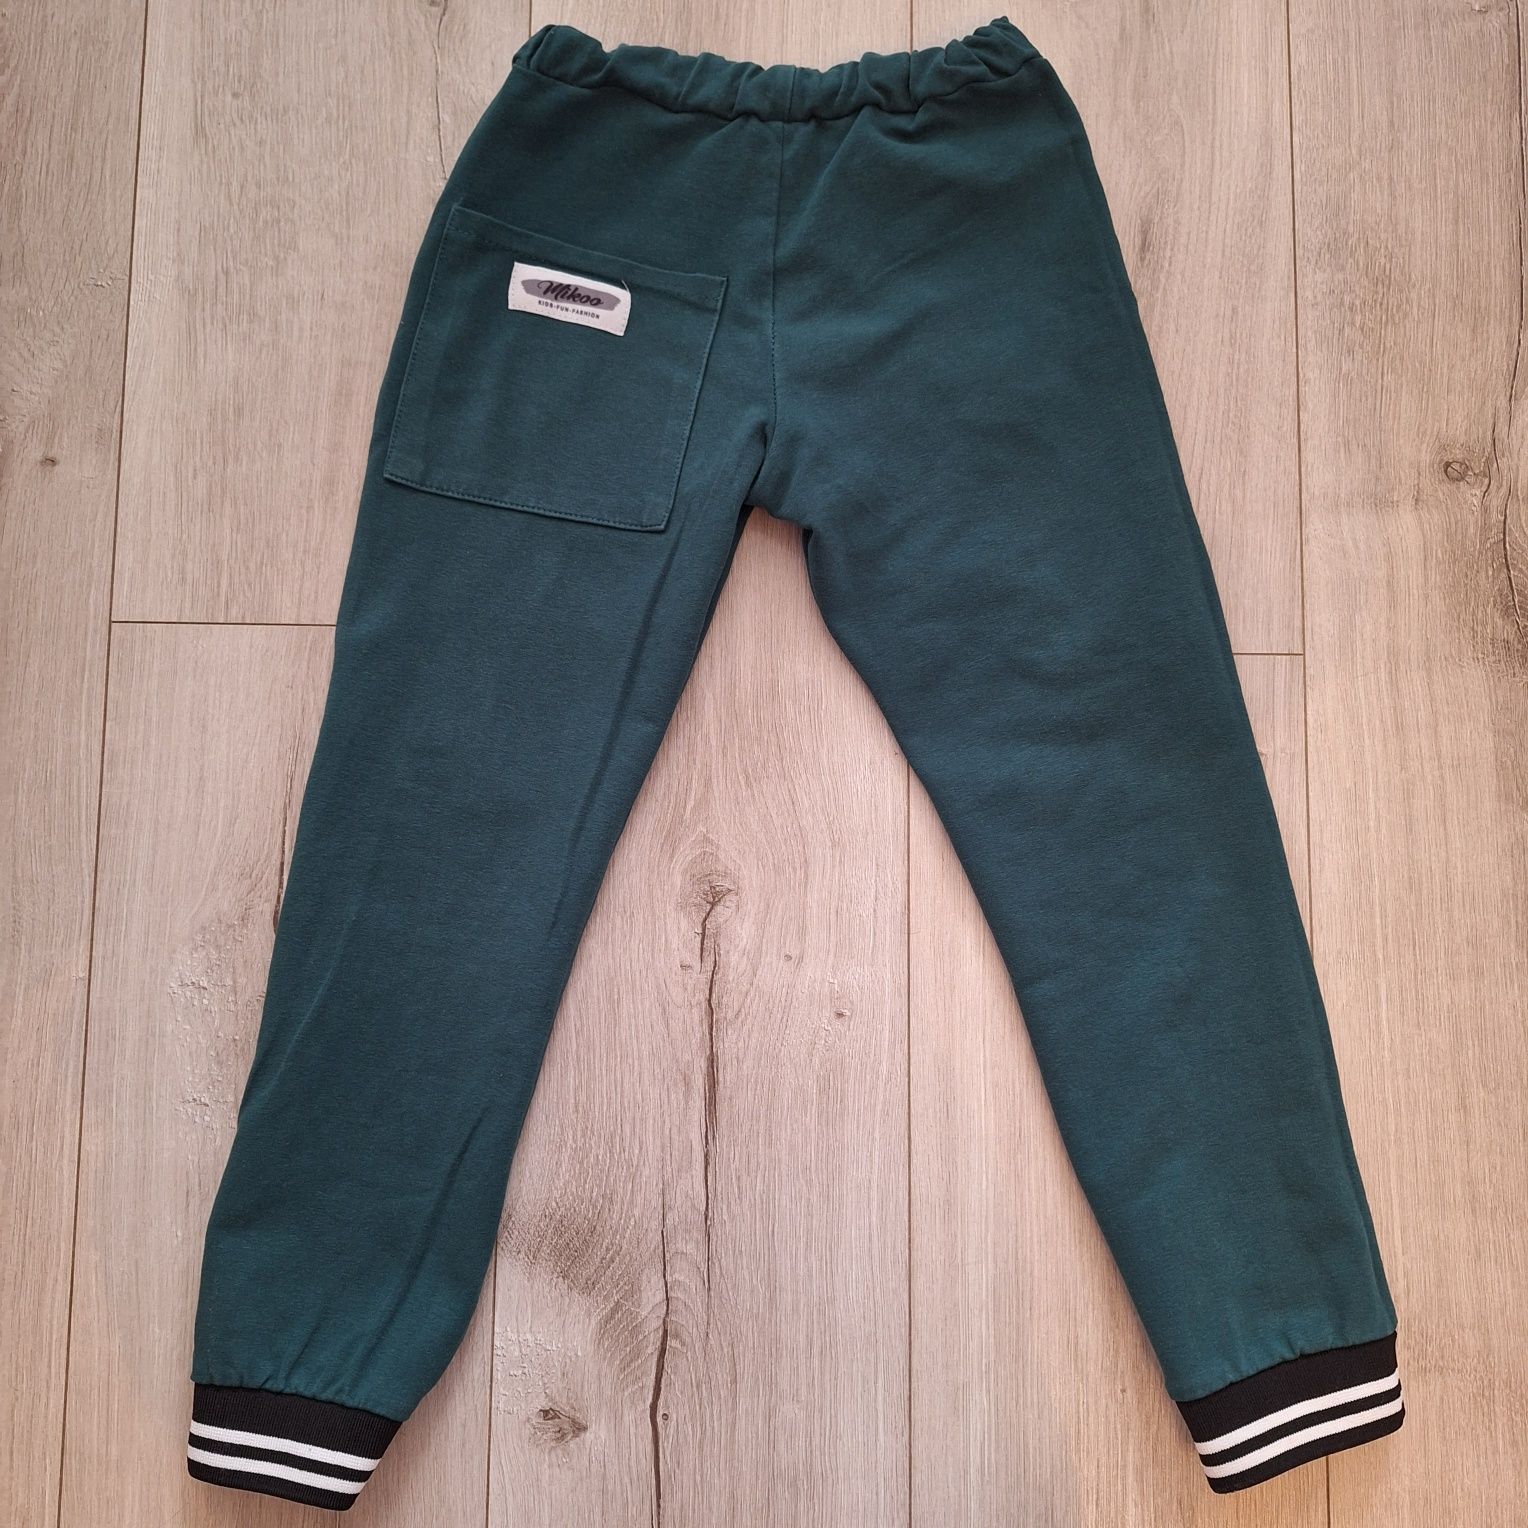 Zielone spodnie dresowe Mikoo rozm. 128/134